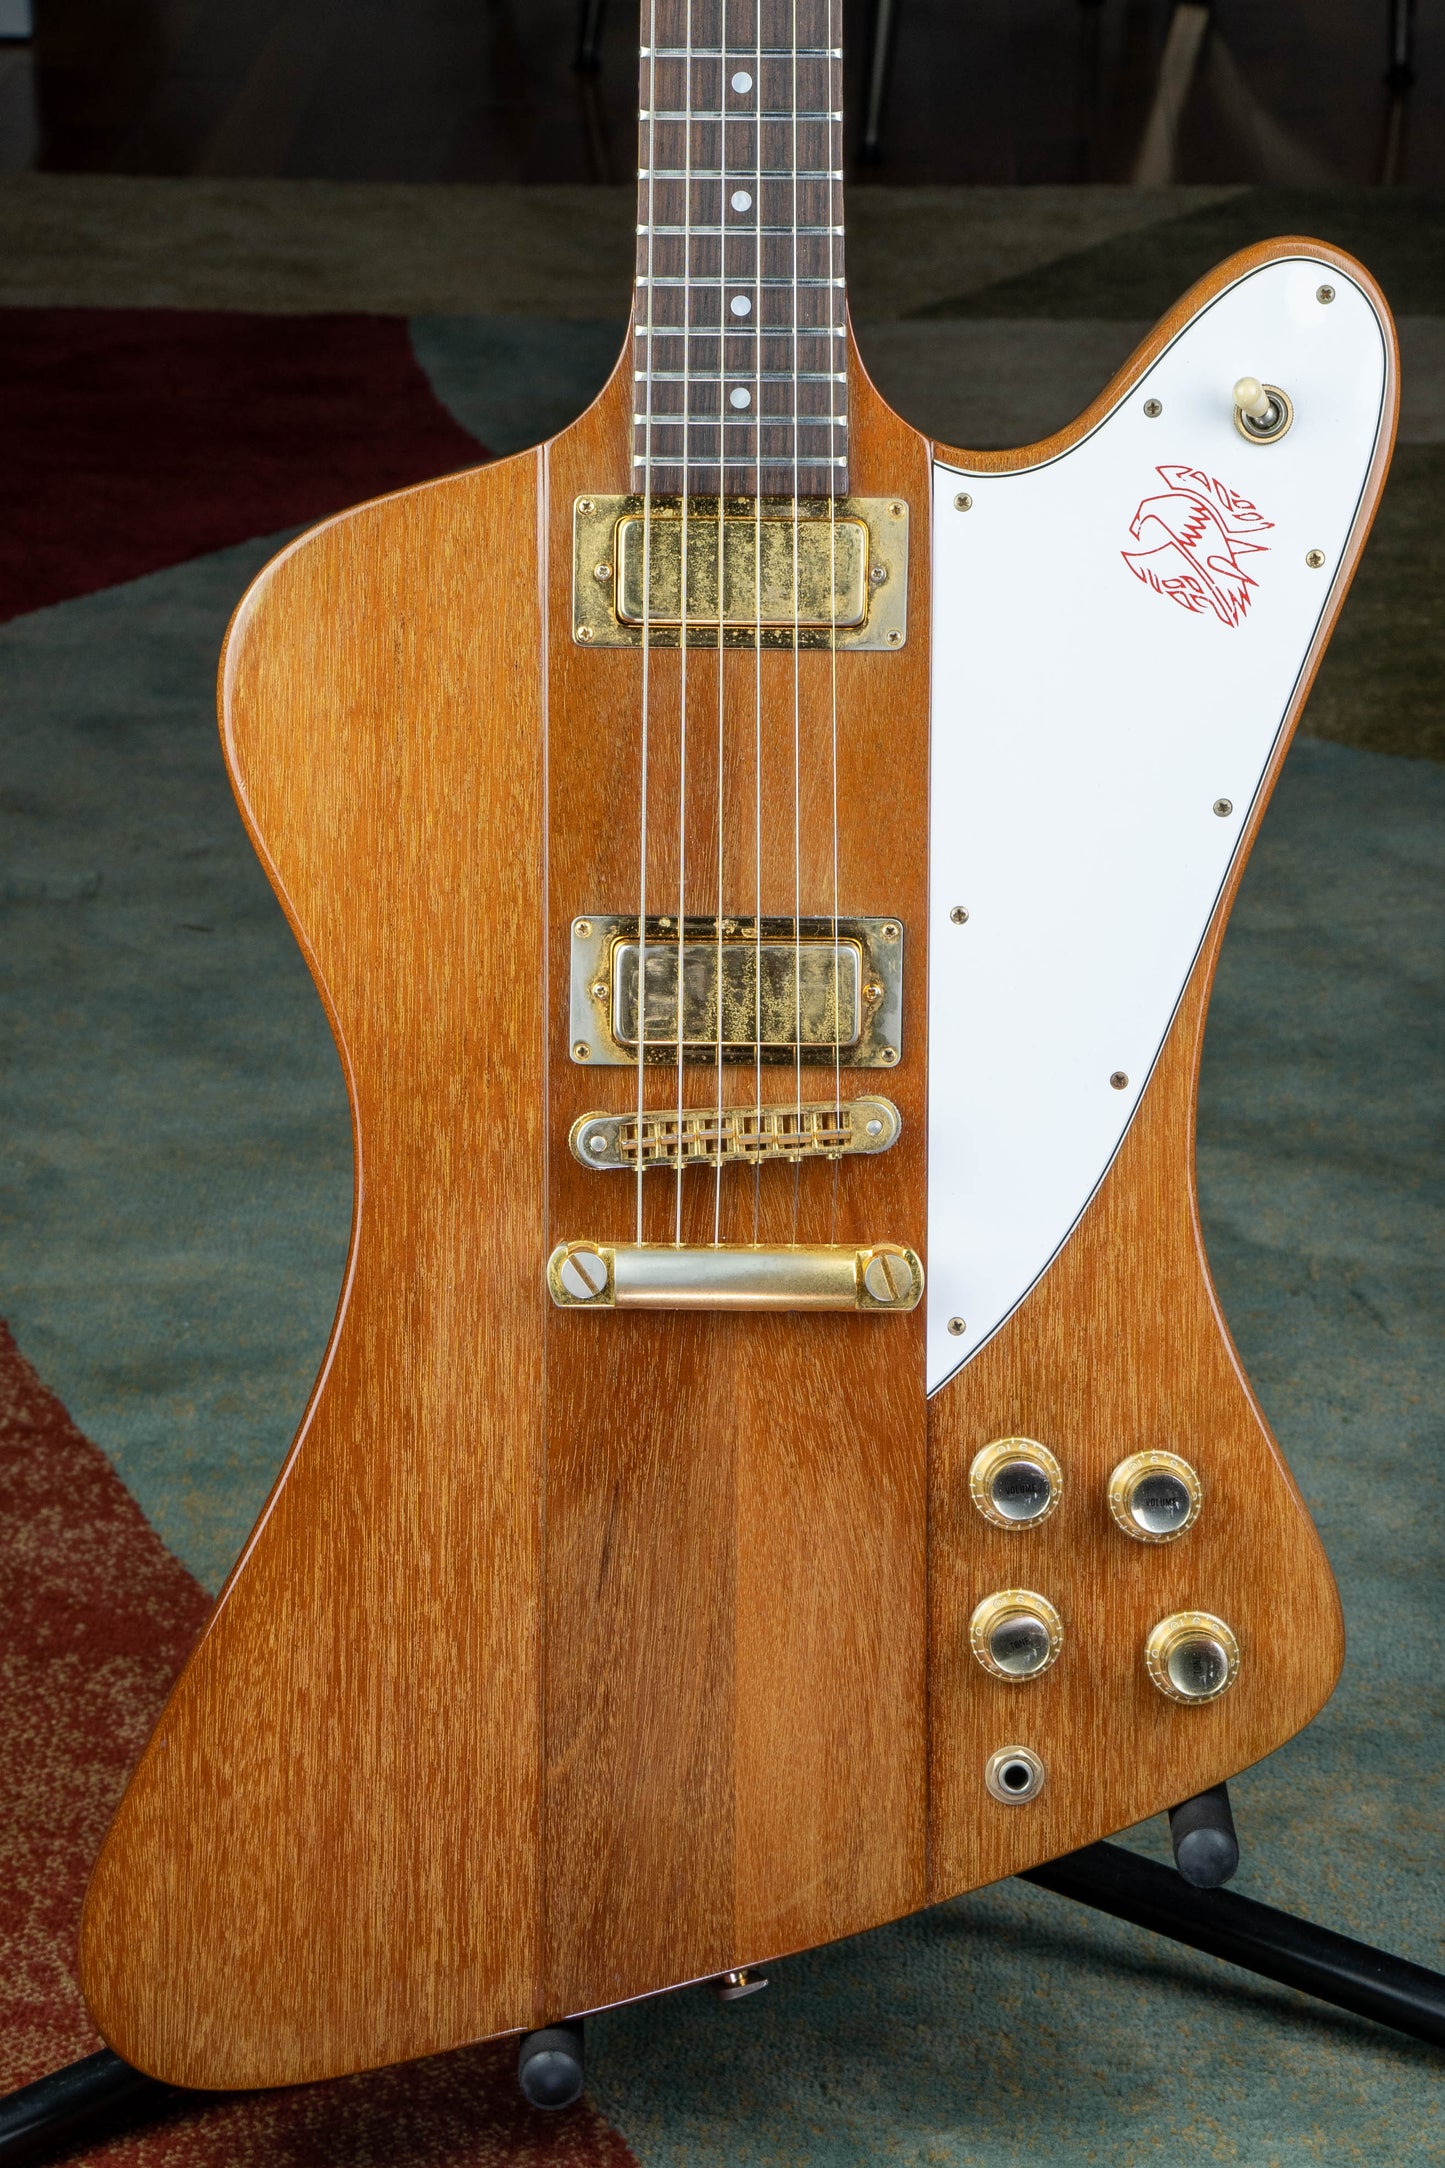 Gibson Firebird 1980 Natural